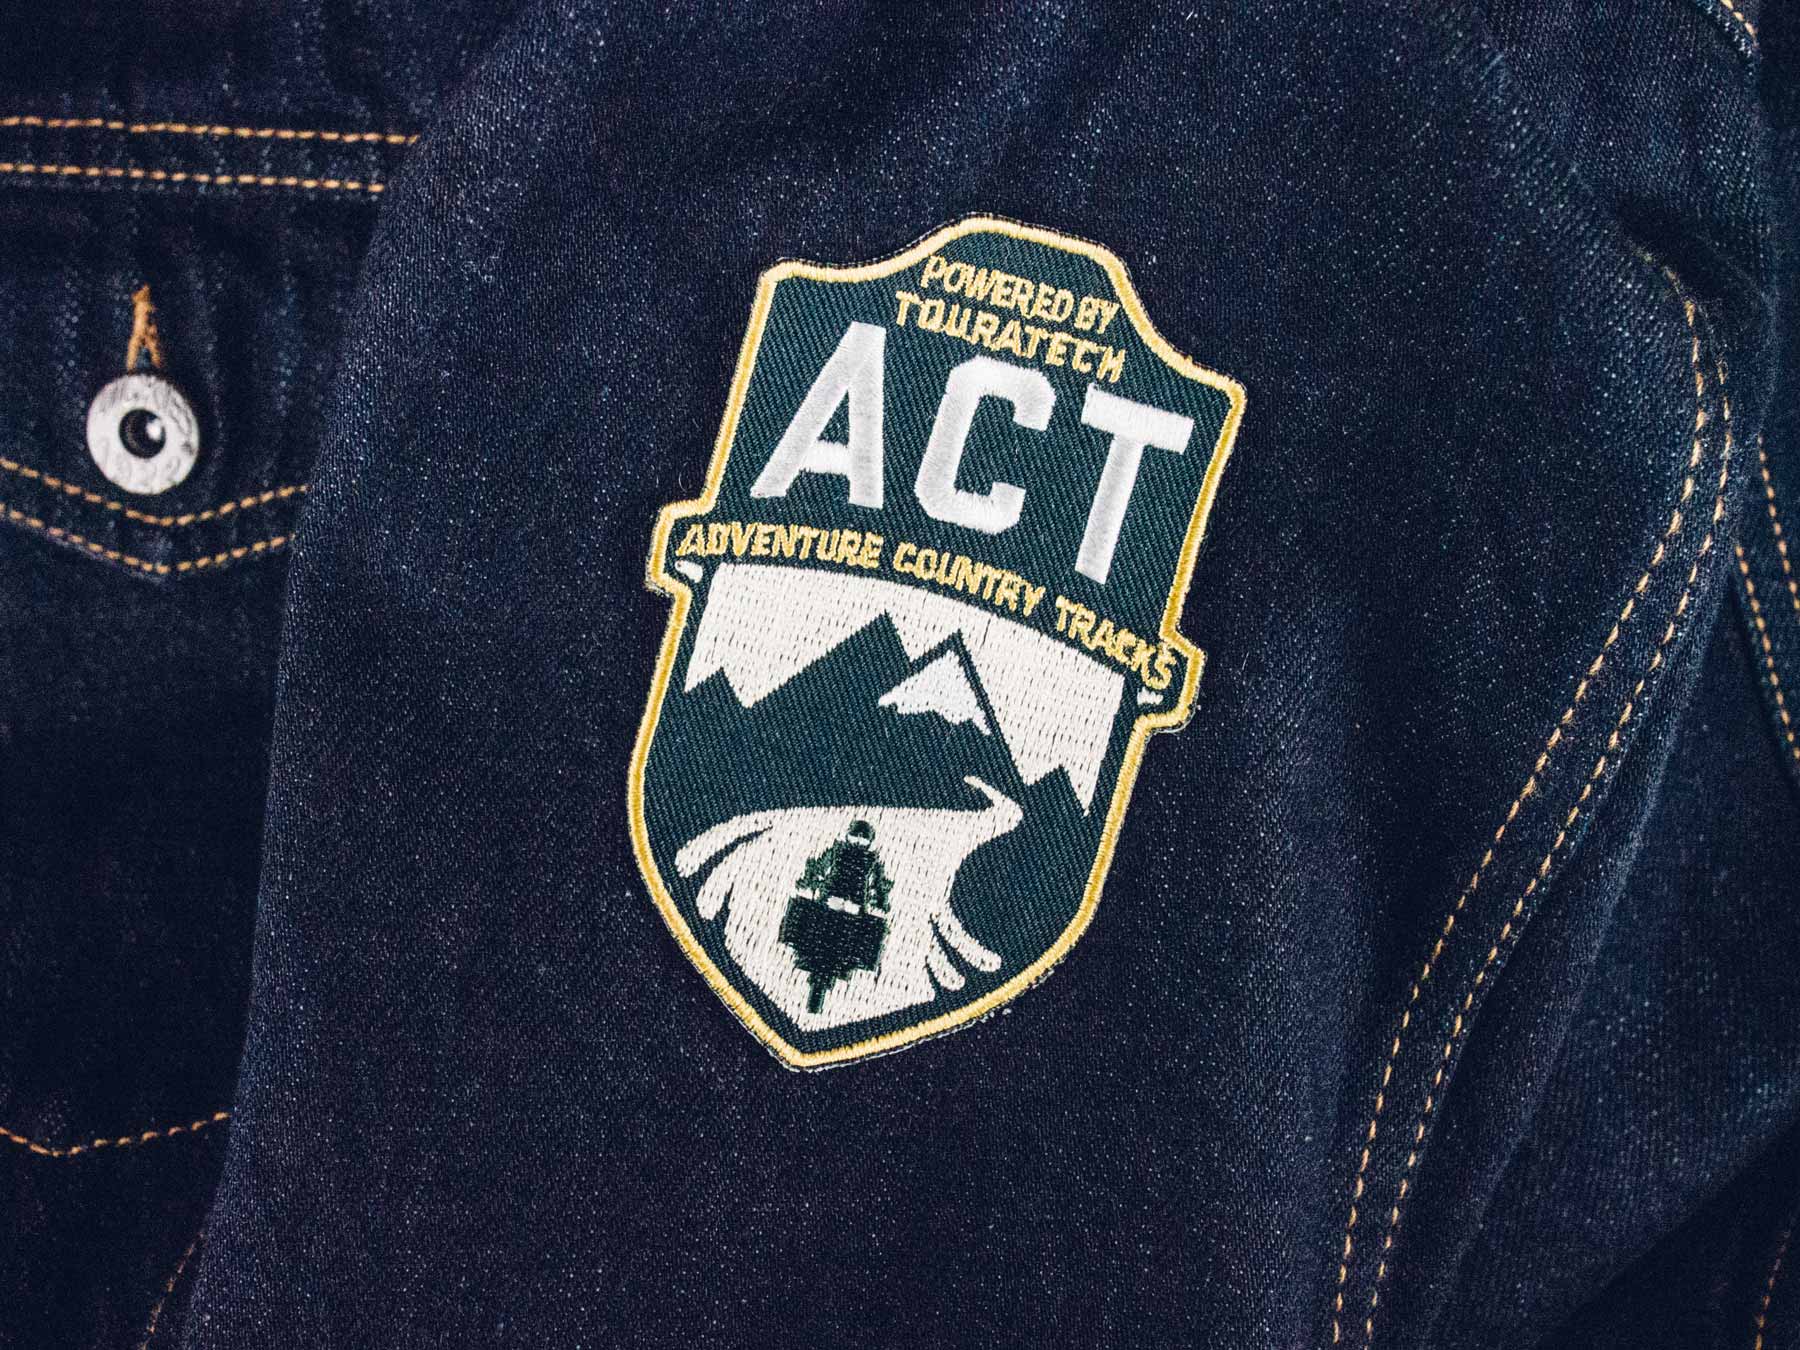 Man sieht das Foto einer Jeansjacke mit Logo-Aufnäher der Adventure Country Tracks von TOURATECH. Das Logo hat eine Wappenform, oben sind die Buchstaben 